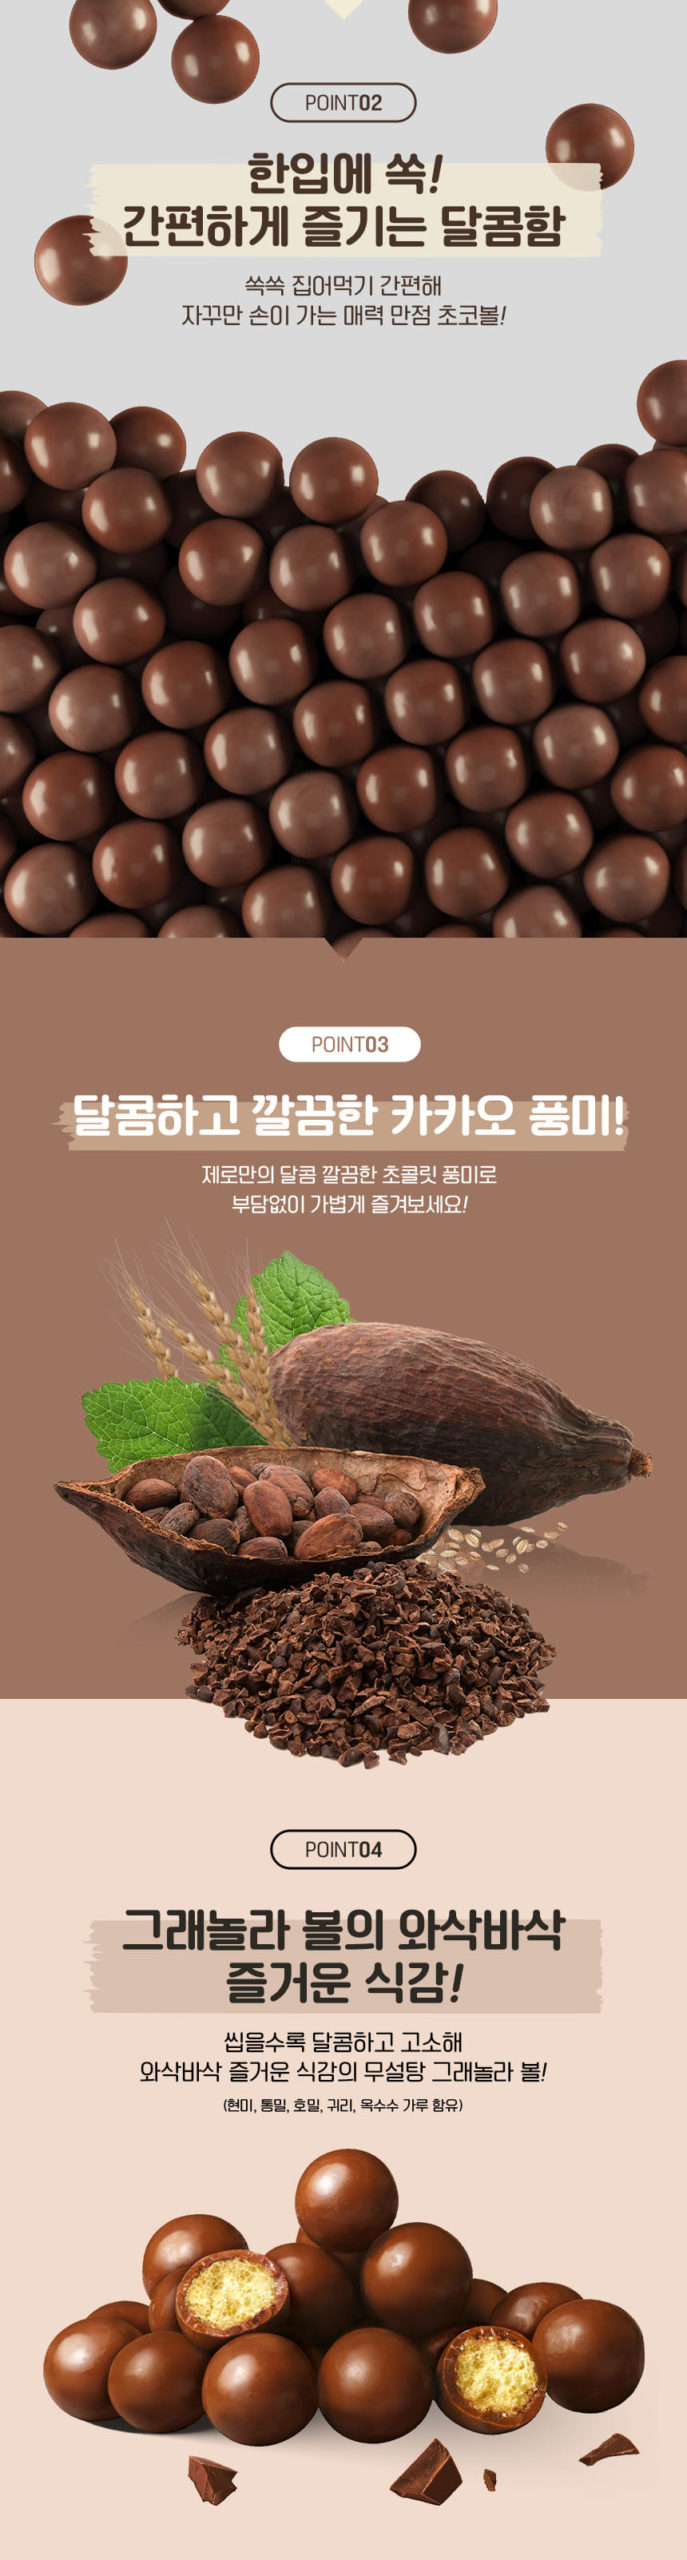 韓國食品-[롯데] 제로 크런치초코볼 140g